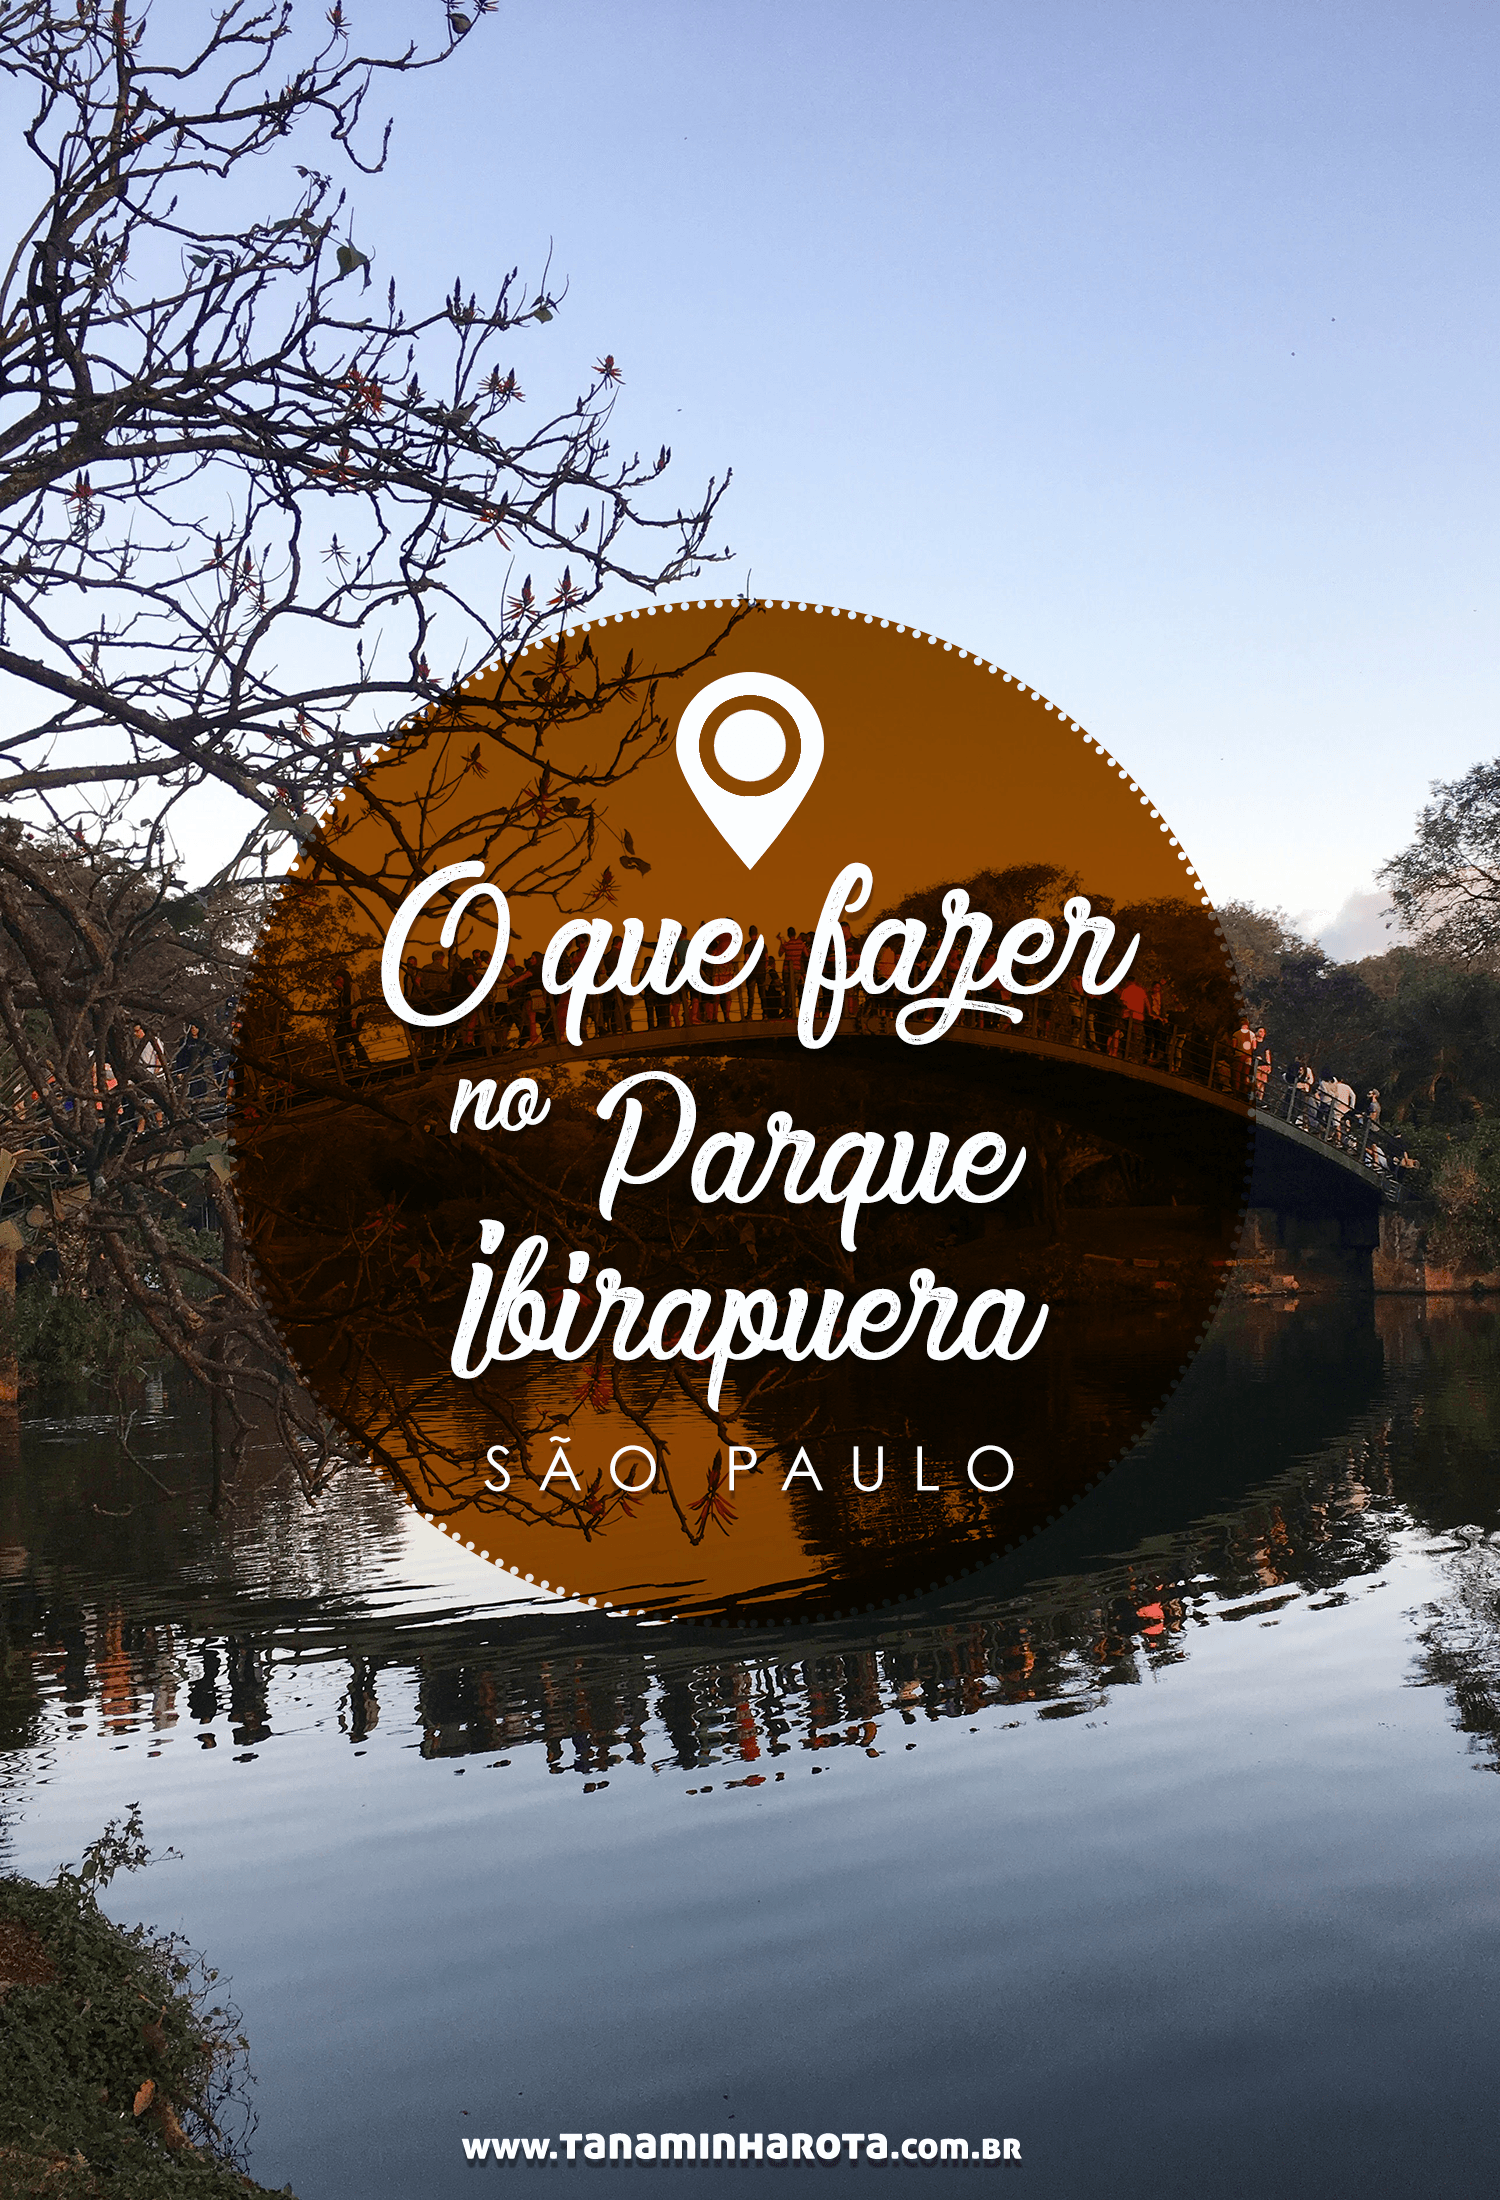 Vai visitar São Paulo? Então você precisa incluir esse passeio no seu roteiro! Descubra o que fazer no Parque Ibirapuera nesse post! #saopaulo #brasil #viagem